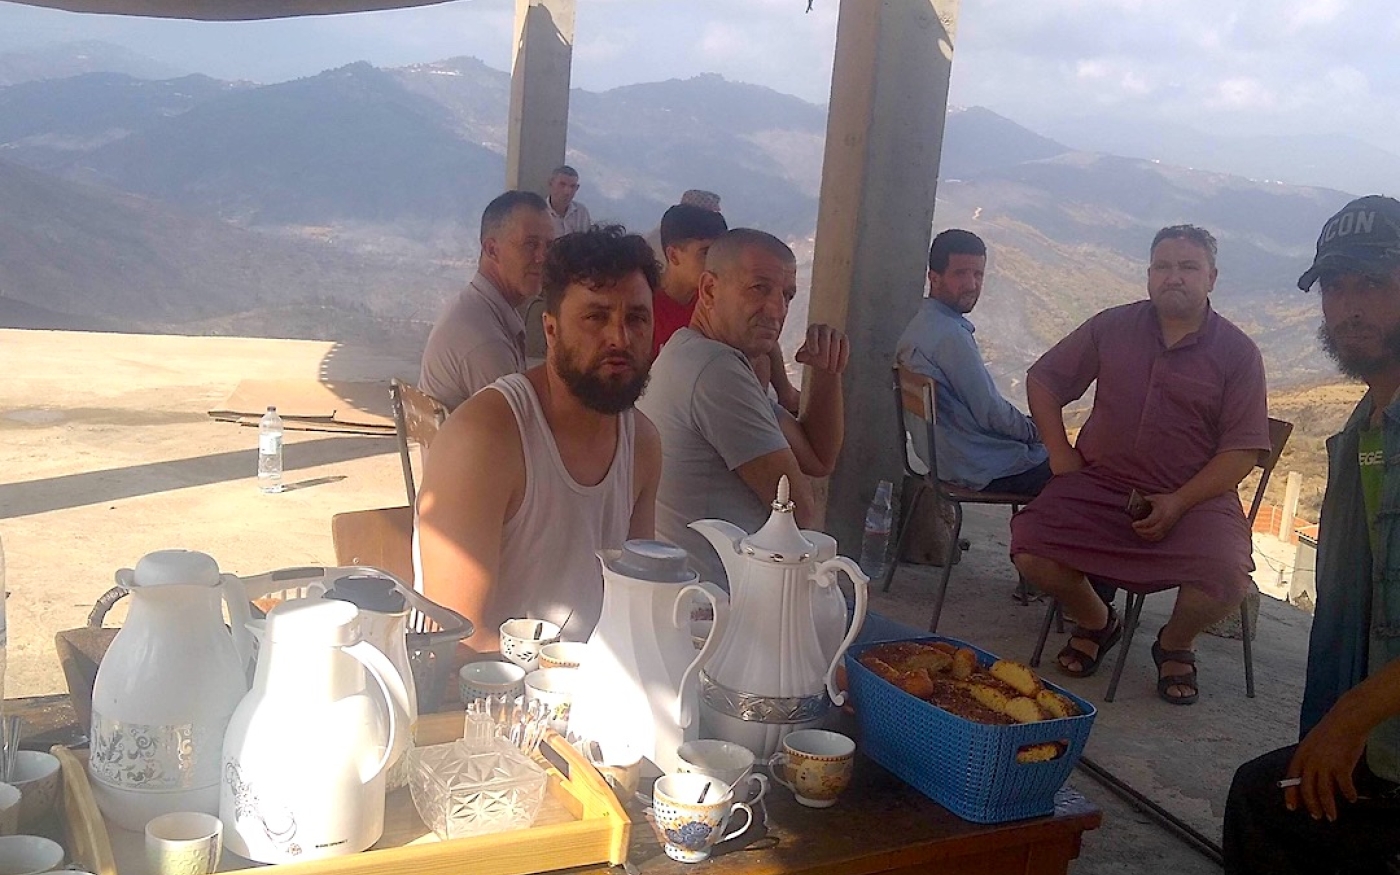 Sur les hauteurs du village, les habitants ont organisé un camp de fortune dans une maison inachevée pour revoir les visiteurs et les dons. Sur une table, sont posés des cafetières, des théières et des boîtes de gâteaux (MEE/Ali Boukhlef)